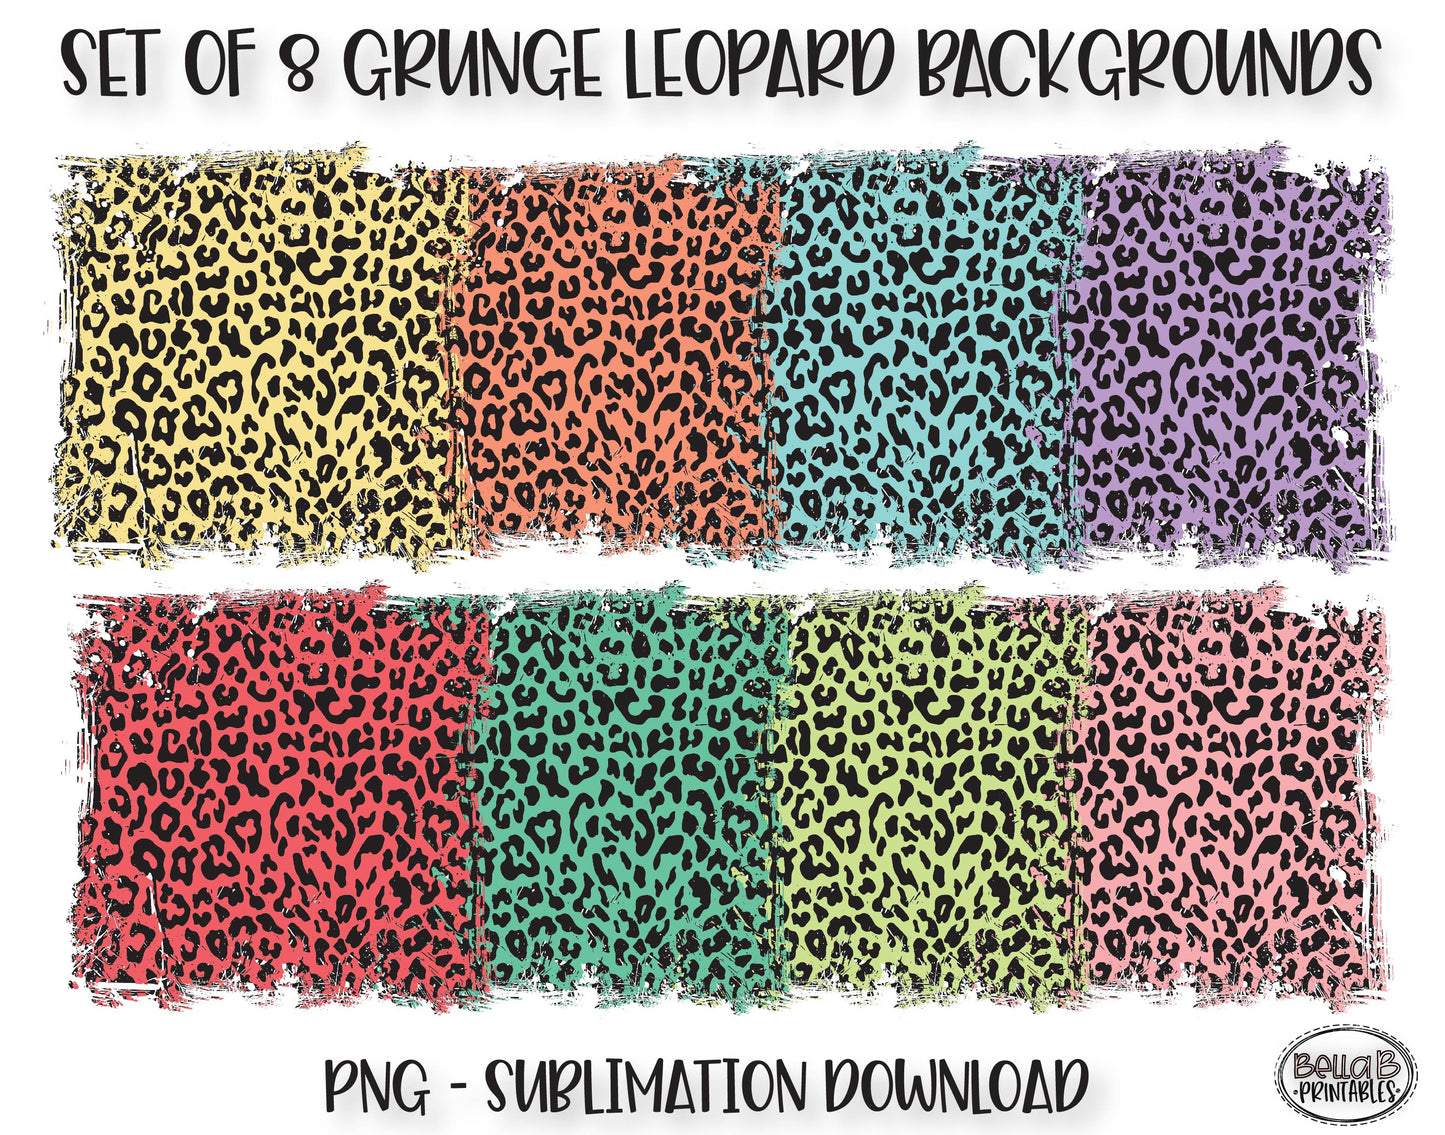 Leopard Print Sublimation Background Bundle, Backsplash